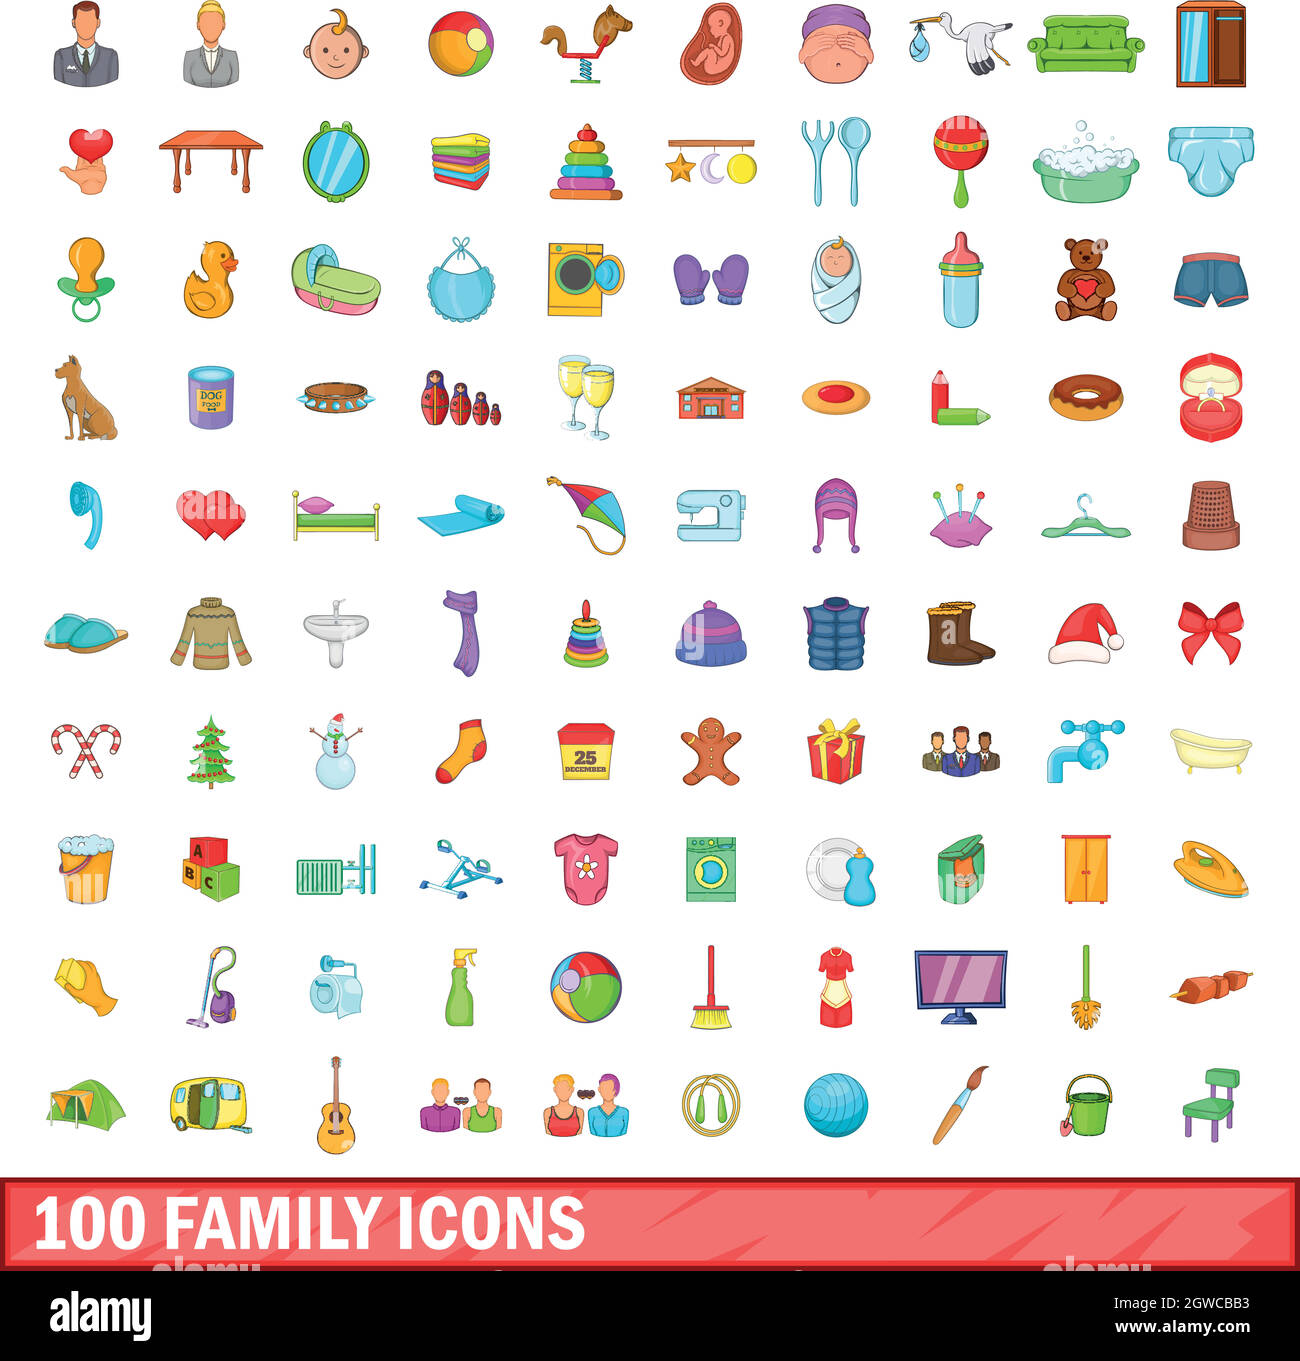 Famille 100 icons set, cartoon style Illustration de Vecteur